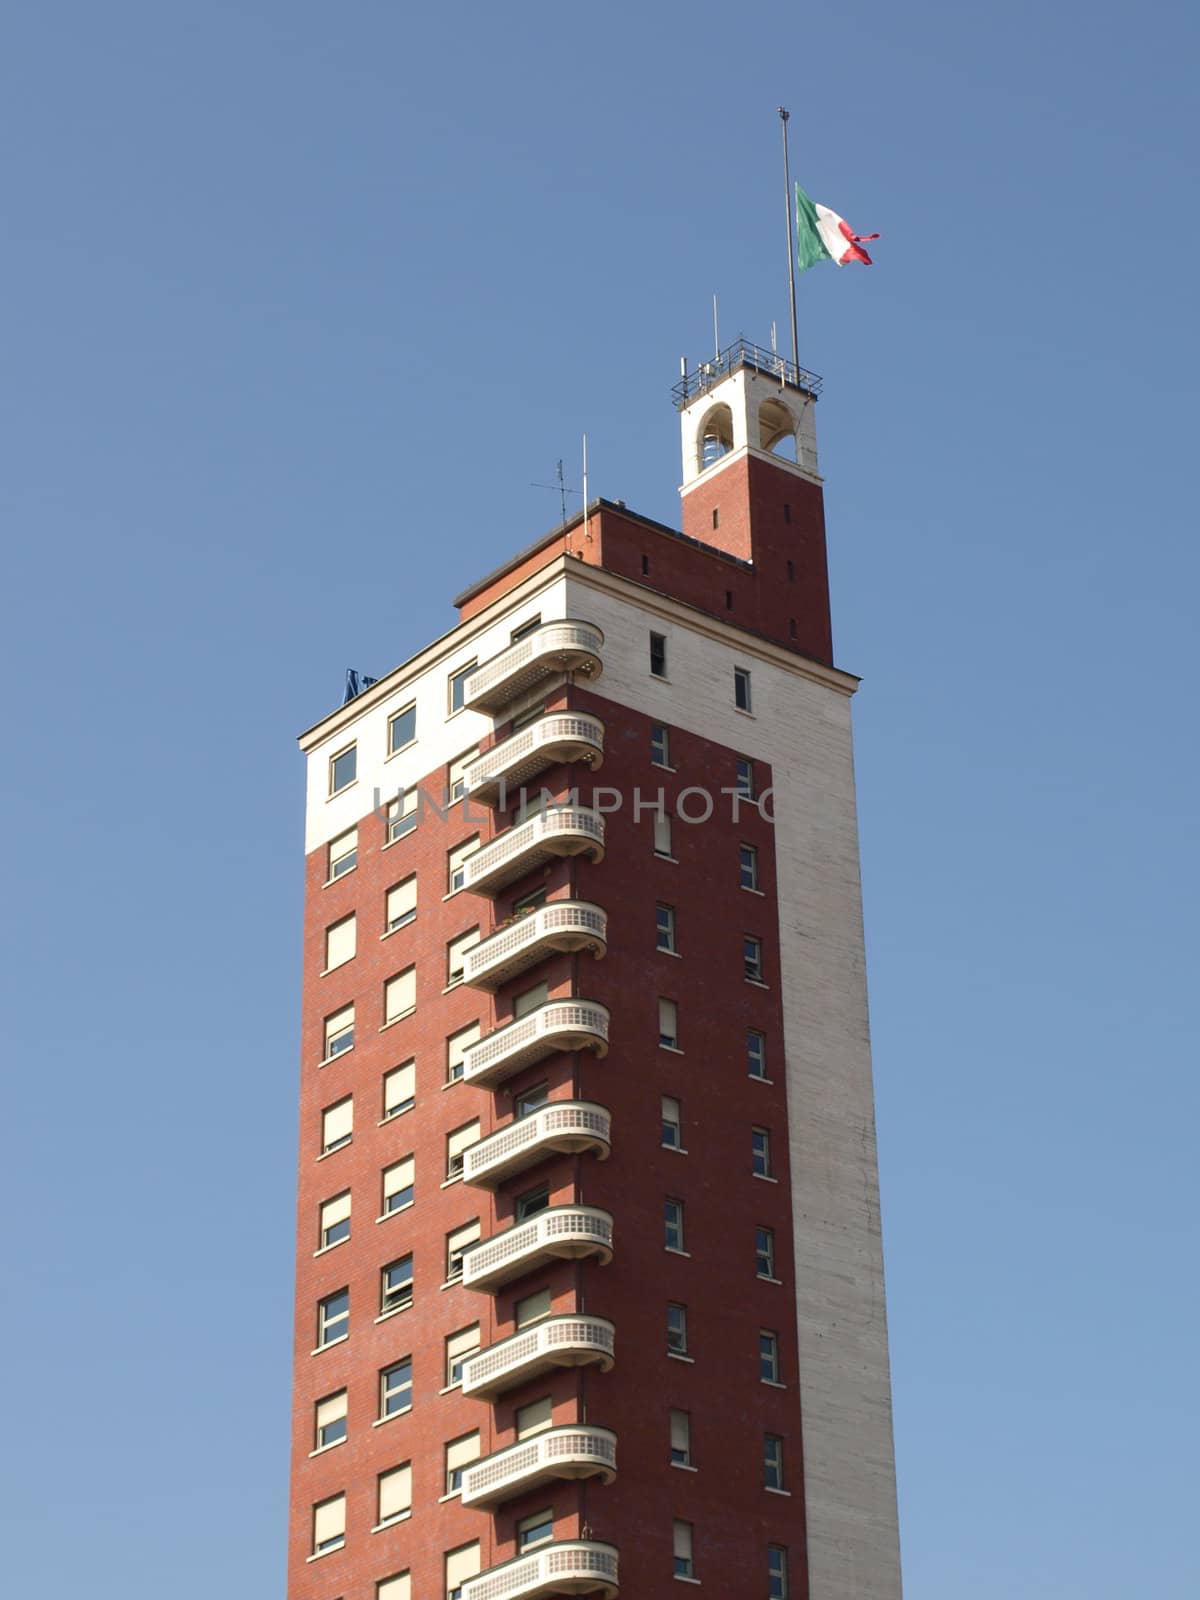 Historic skyscraper in Piazza Castello, Turin, Italy